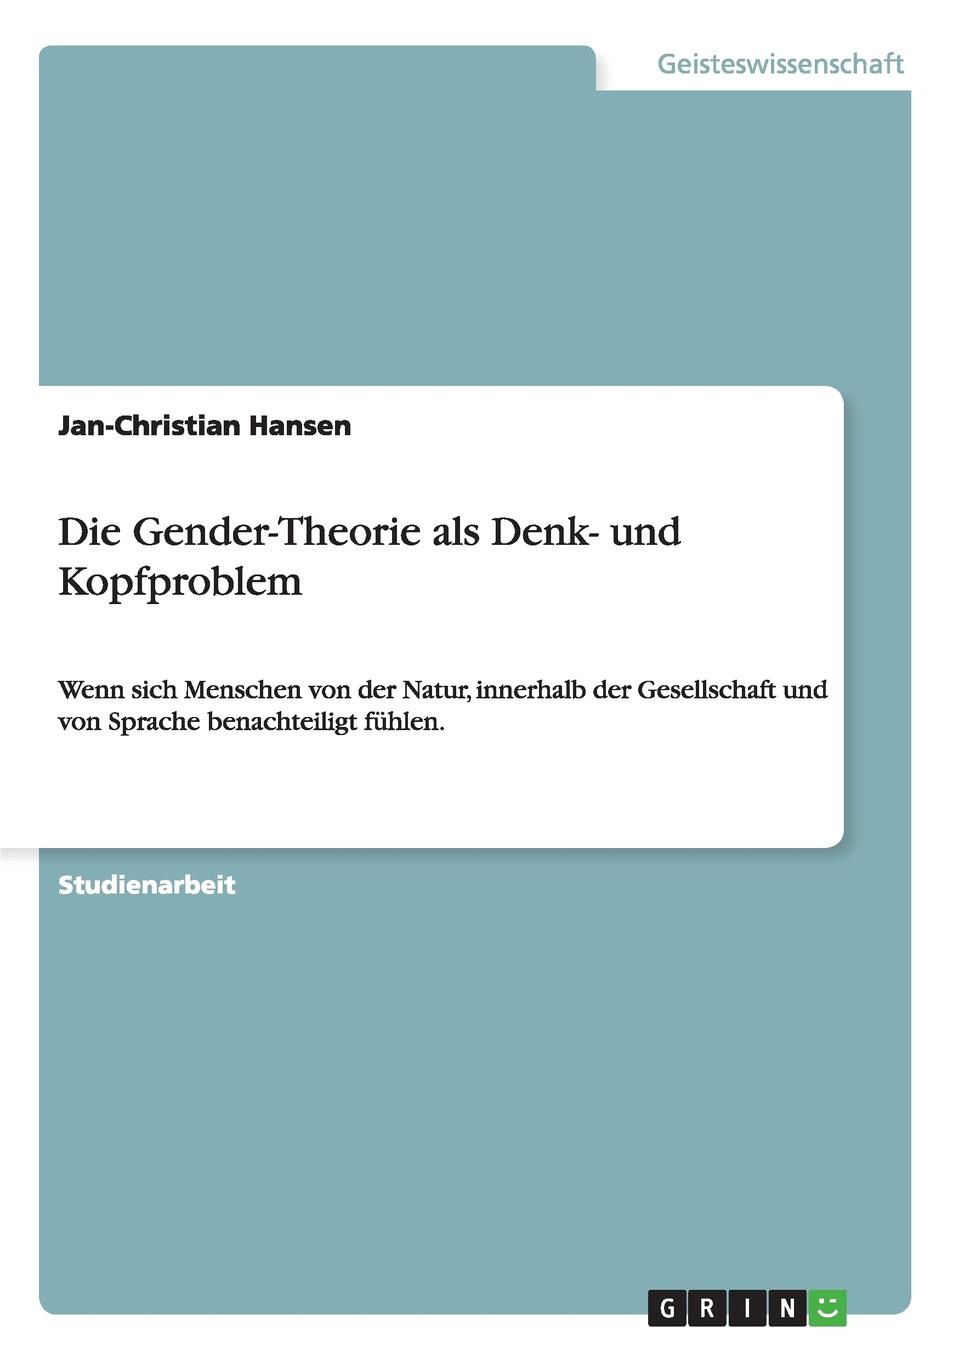 Die Gender-Theorie als Denk- und Kopfproblem